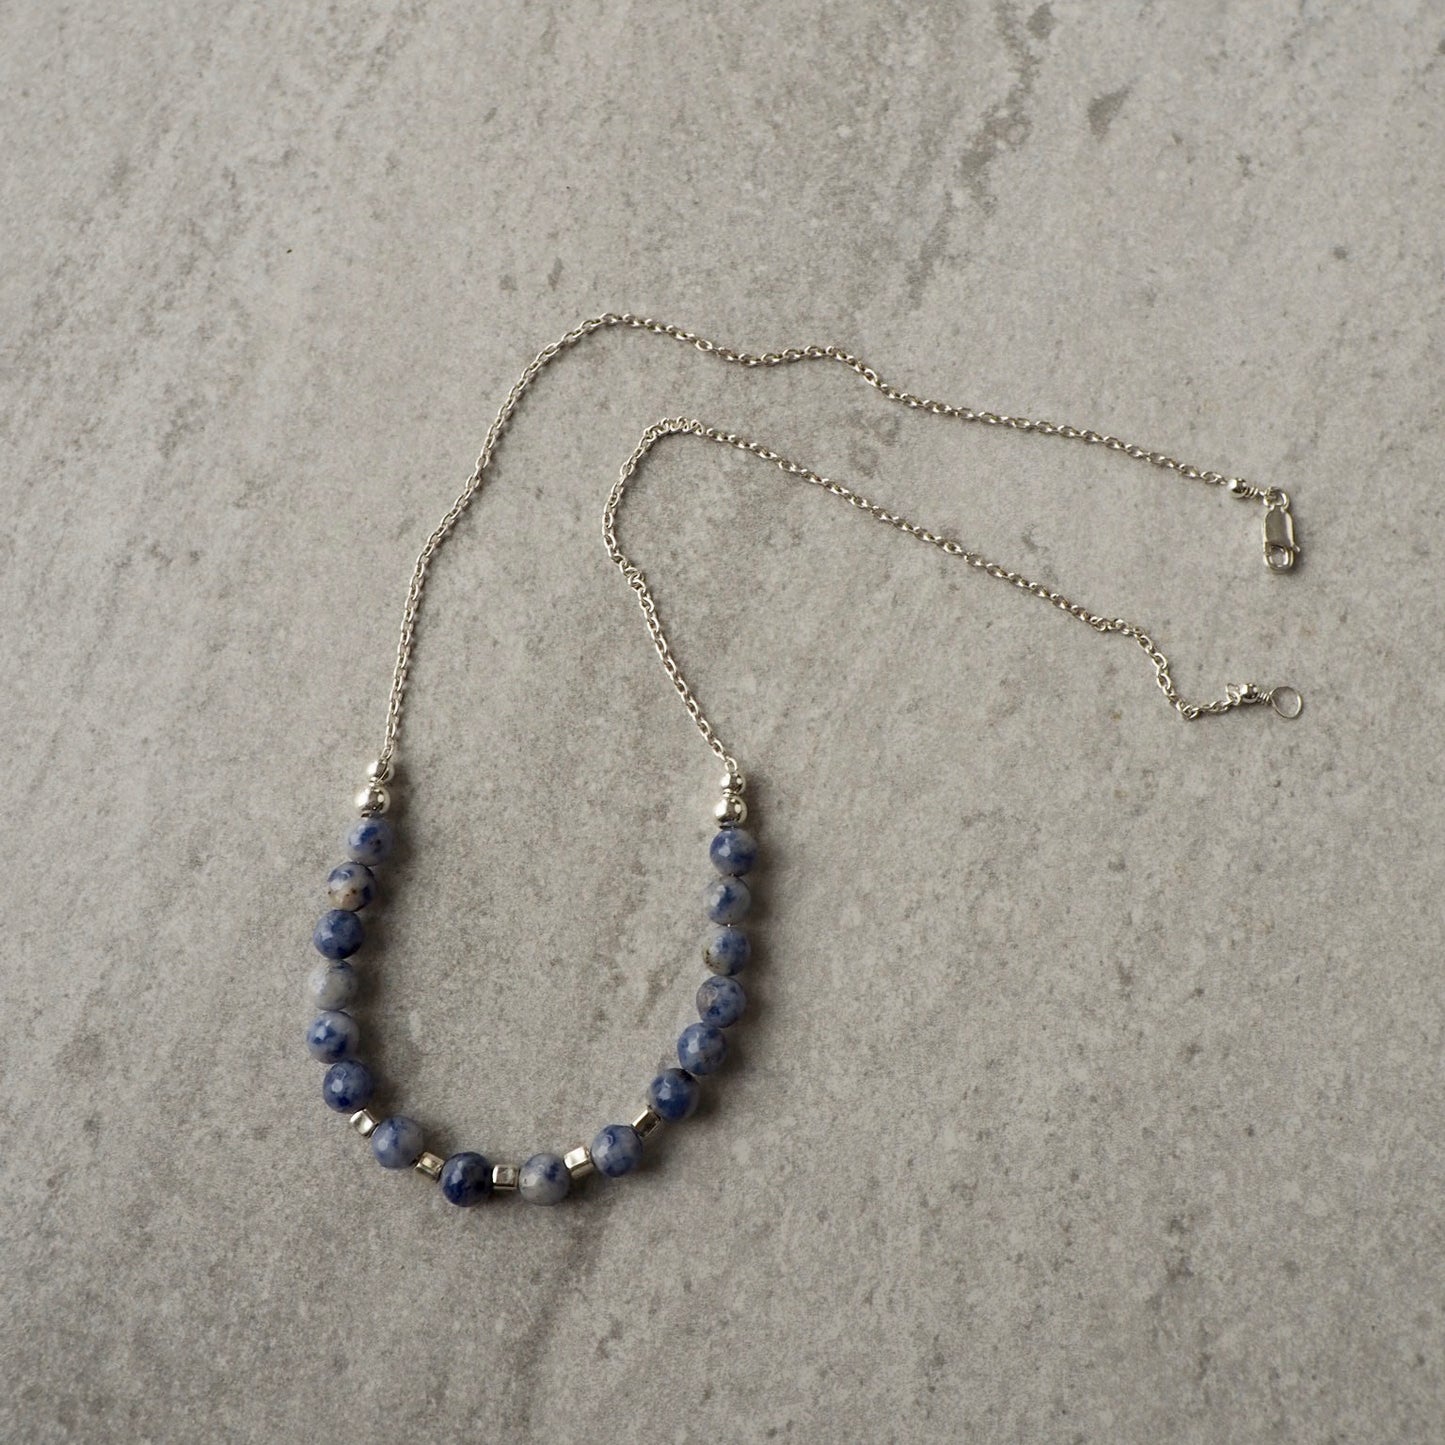 Blue Jasper Sterling Silver Necklace by Nancy Wallis Designs